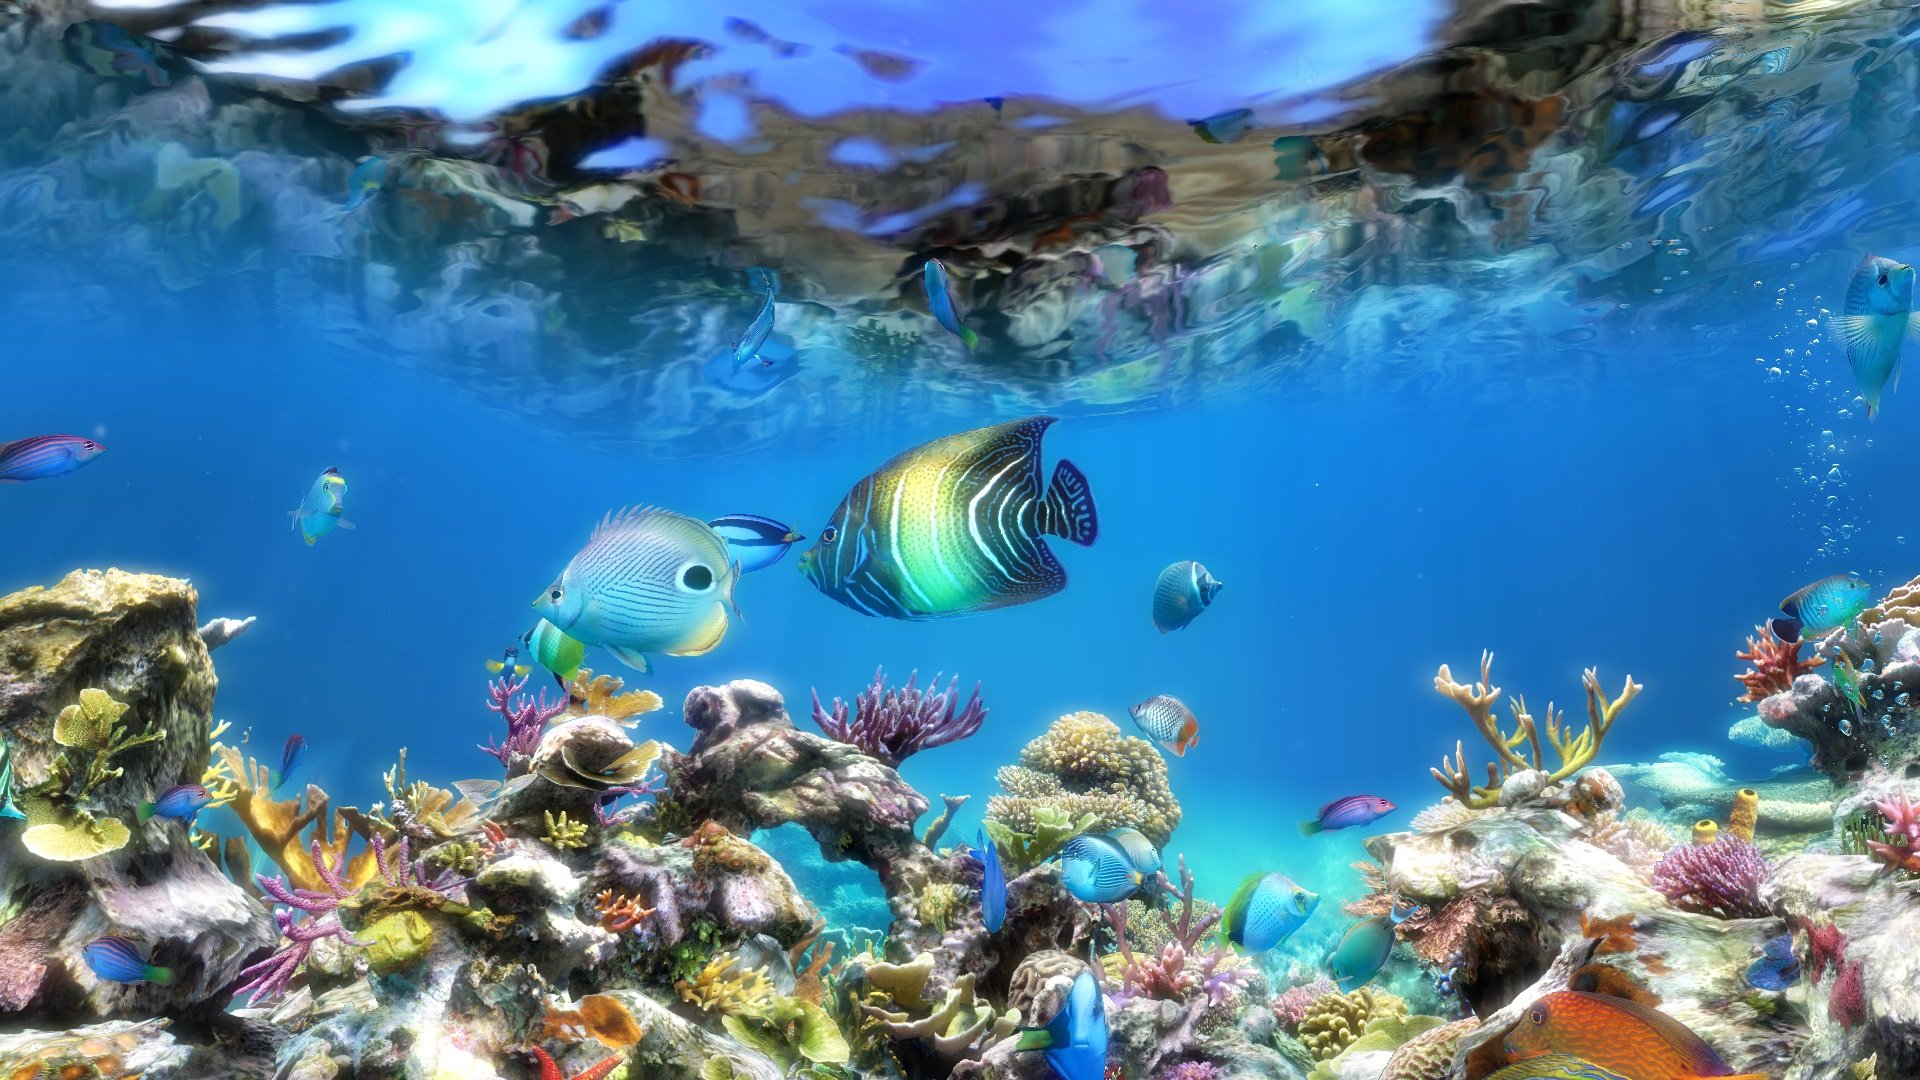 aquarium live wallpaper hd,fisch,unter wasser,meeresbiologie,korallenriff,korallenrifffische